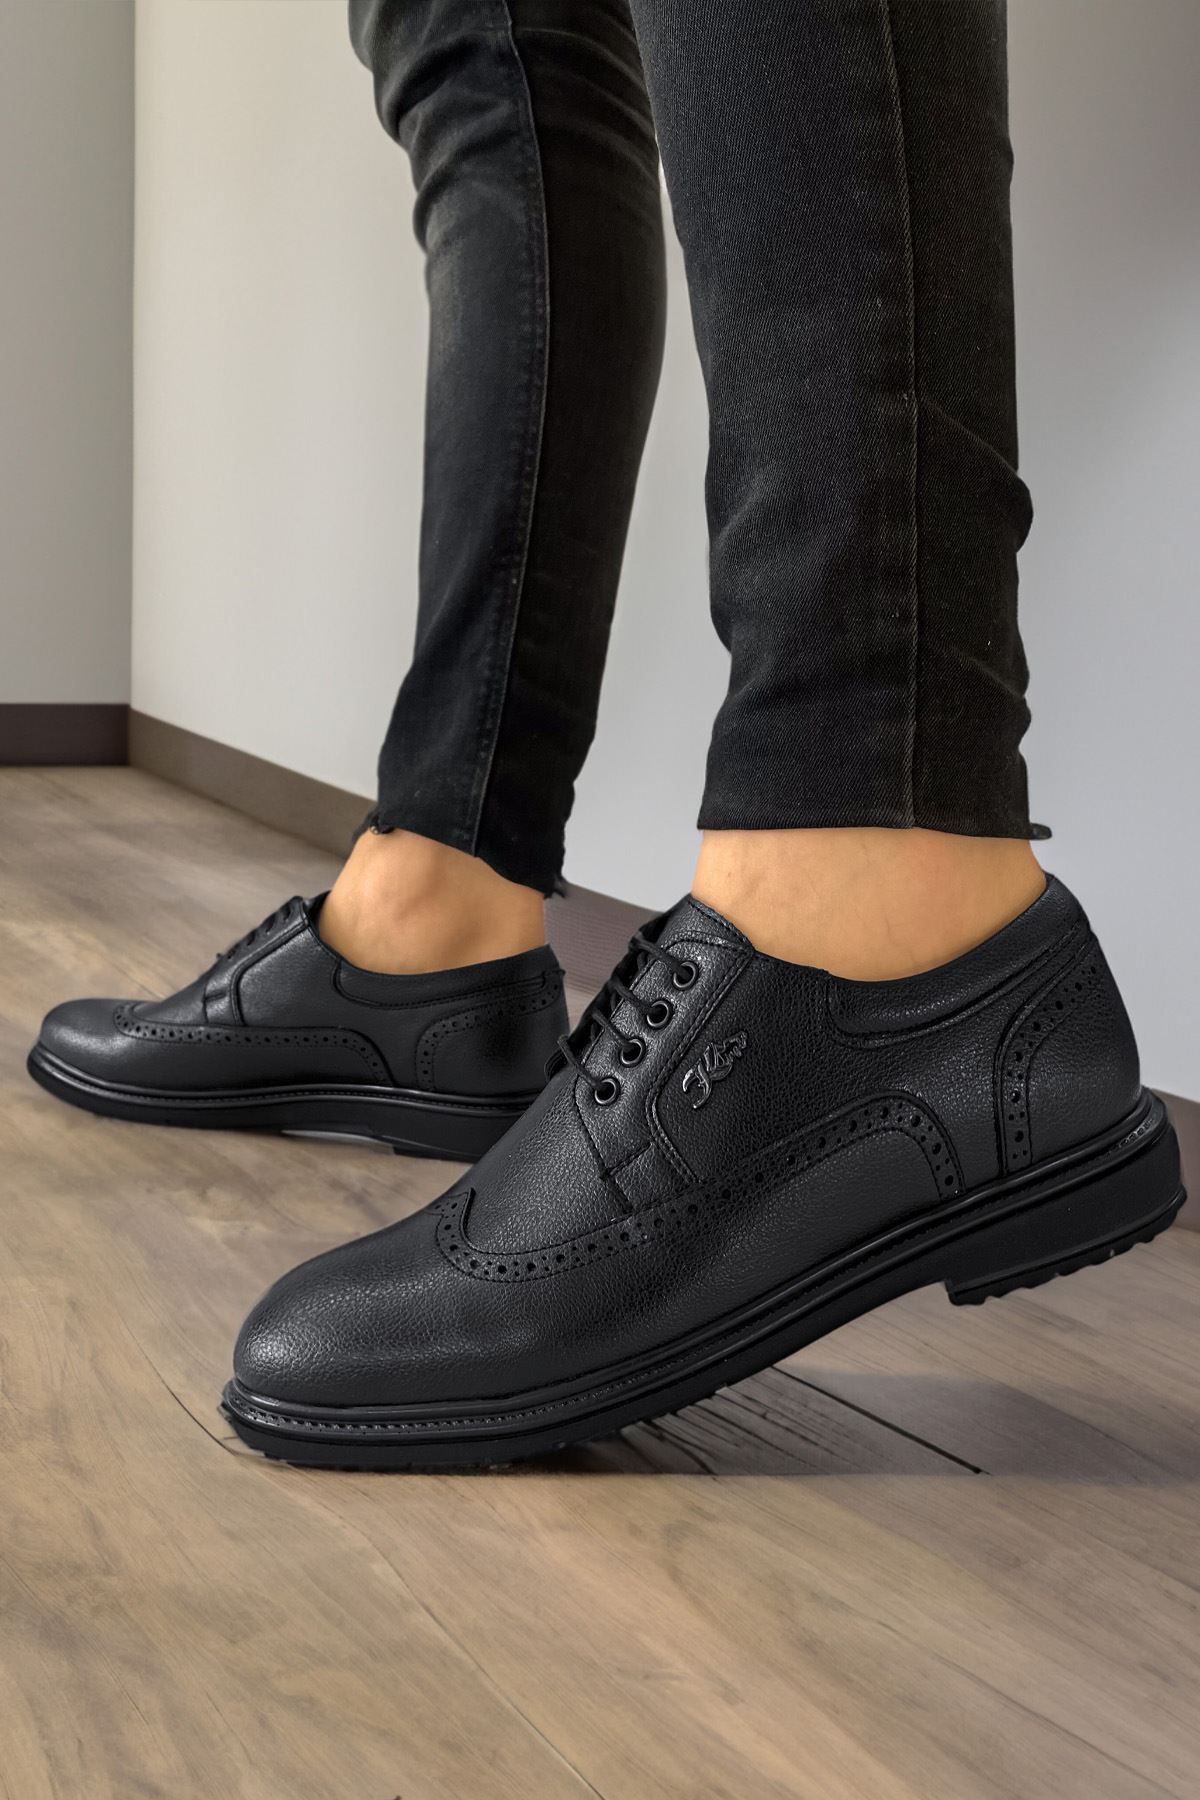 Boy Uzatan Ayakkabı Gizli Topuklu Siyah Desenli Deri Tarz Erkek Klasik Ayakkabı MYY532